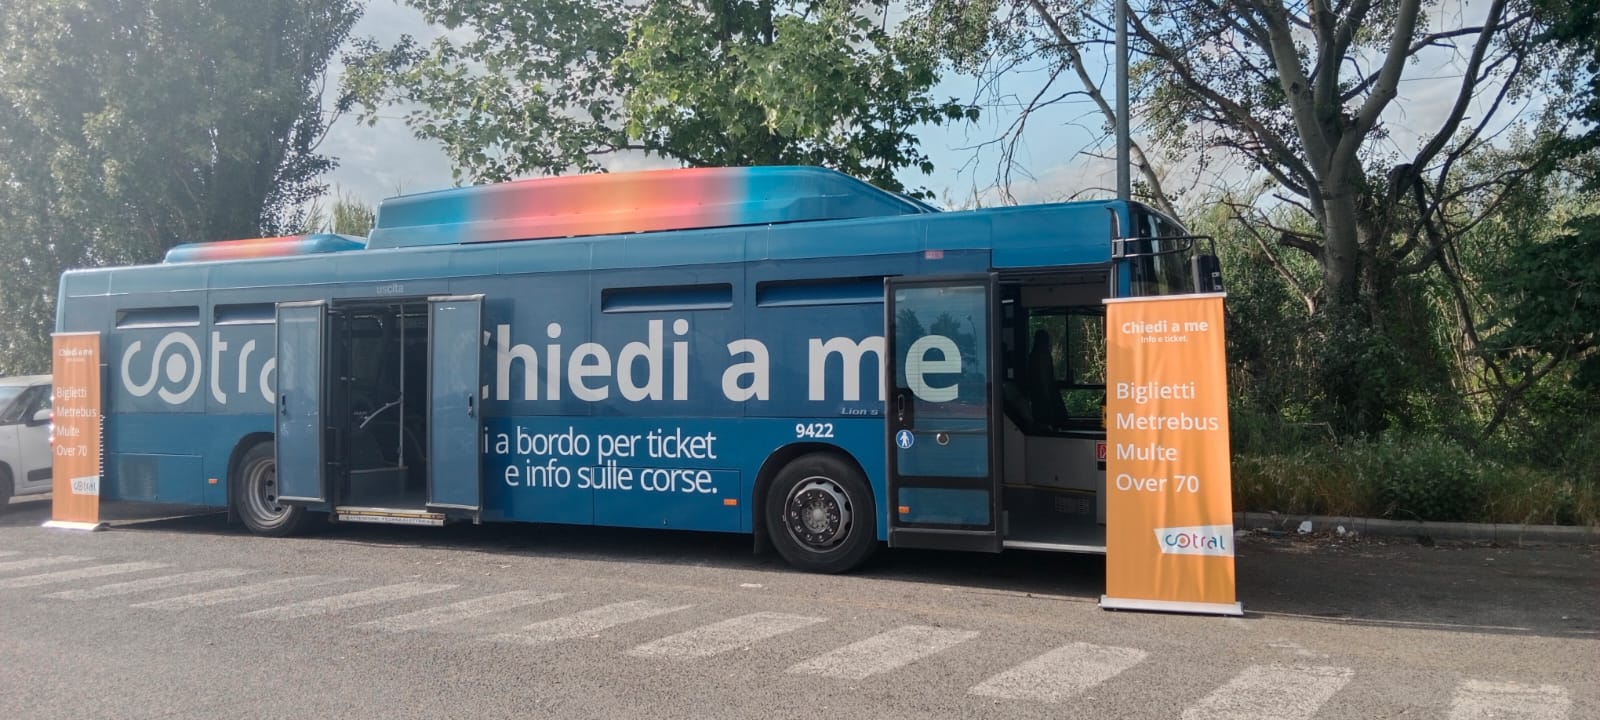 Bus itinerante Cotral "Chiedi a me"